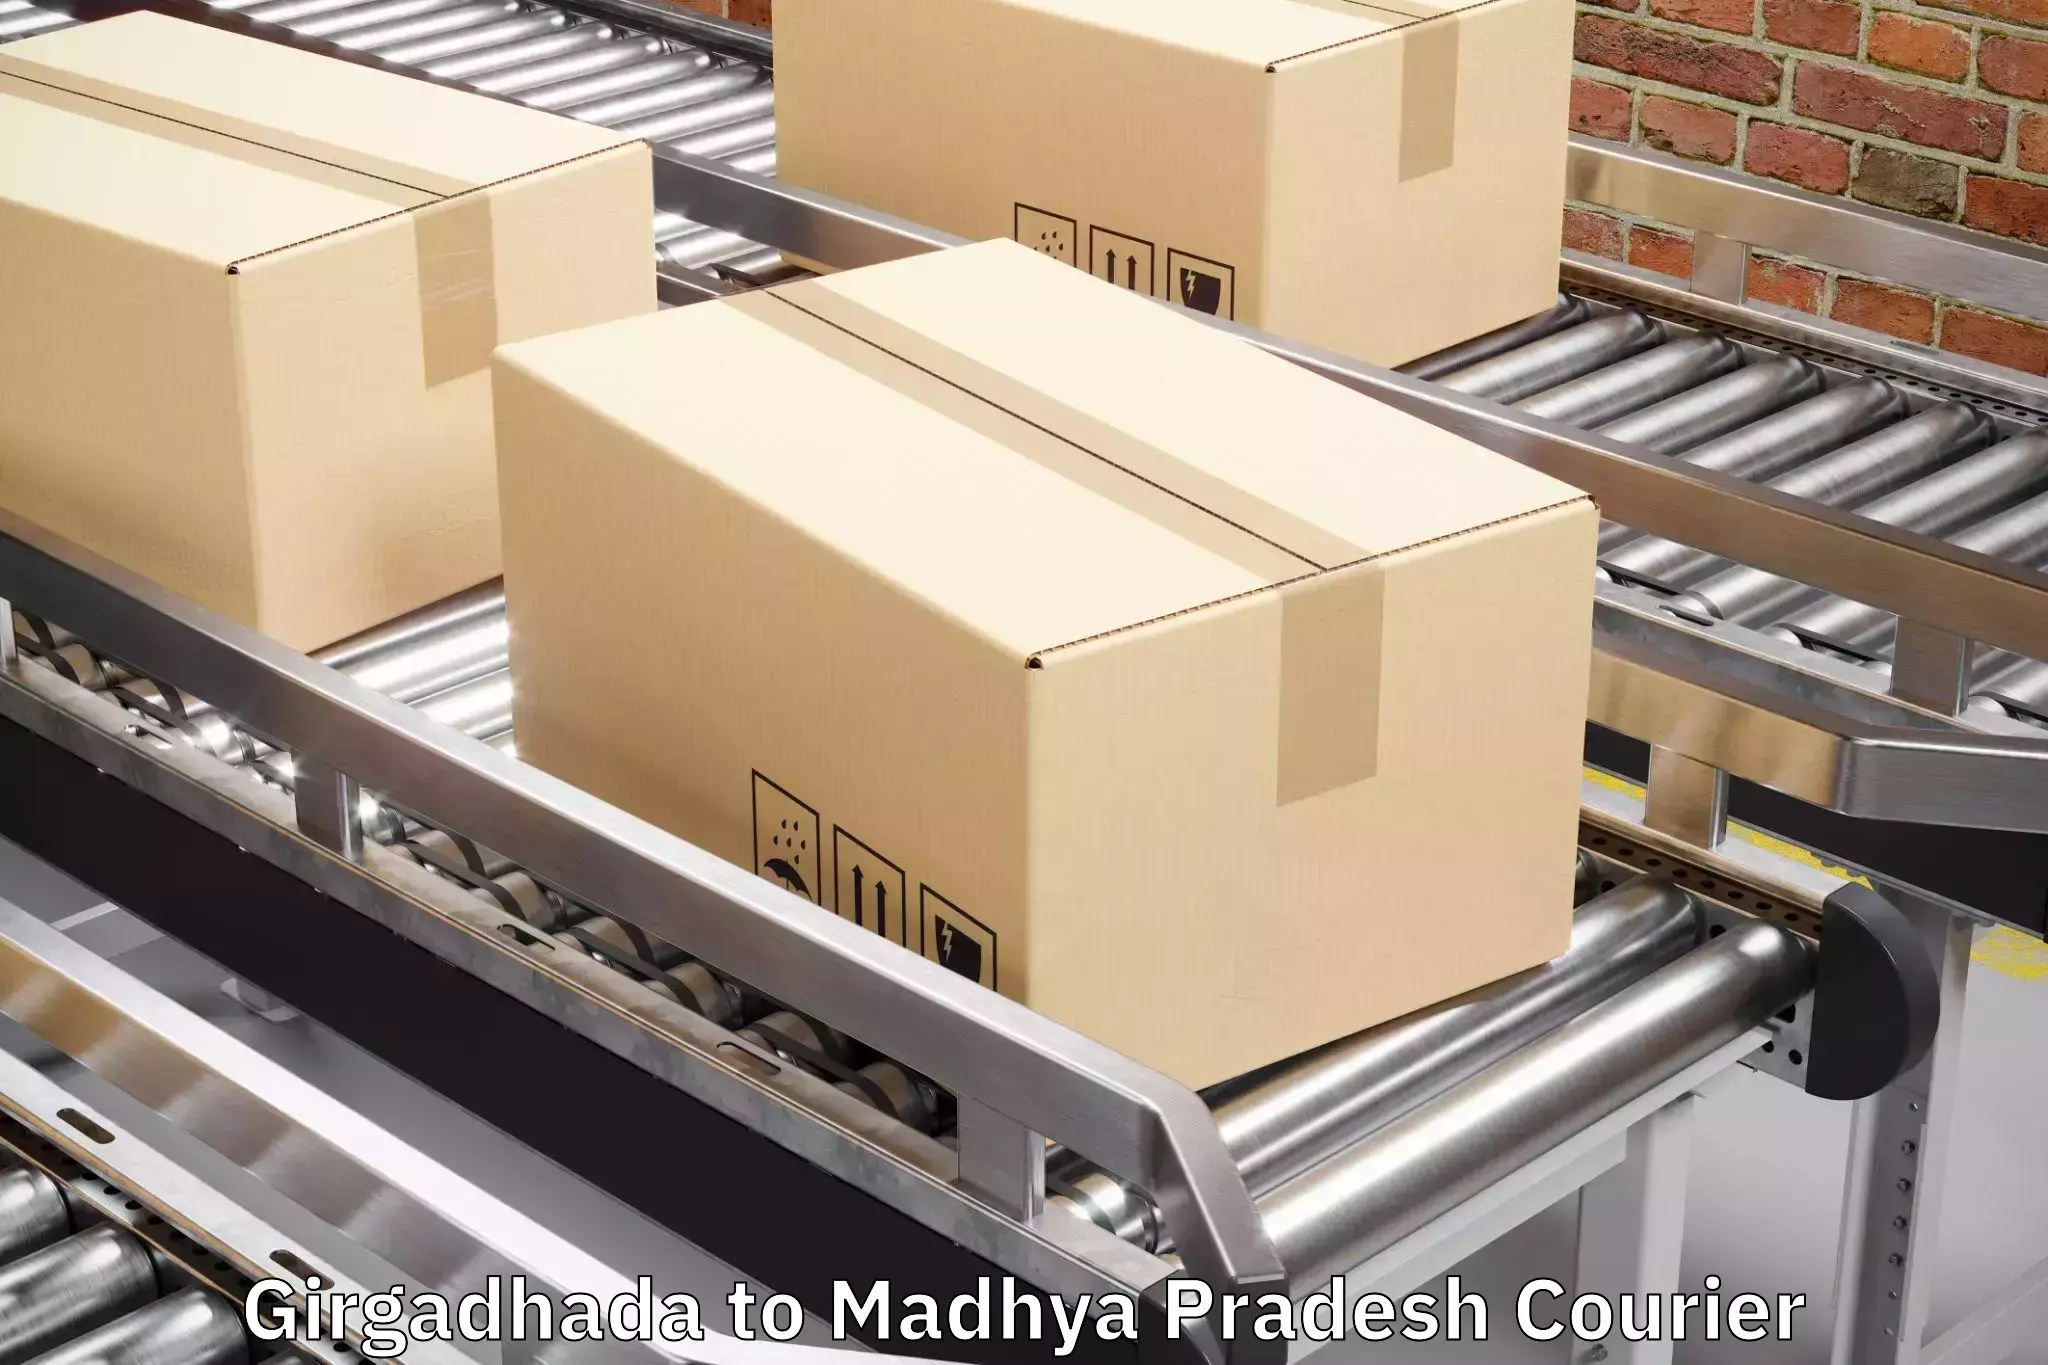 Bulk luggage shipping in Girgadhada to Madhya Pradesh